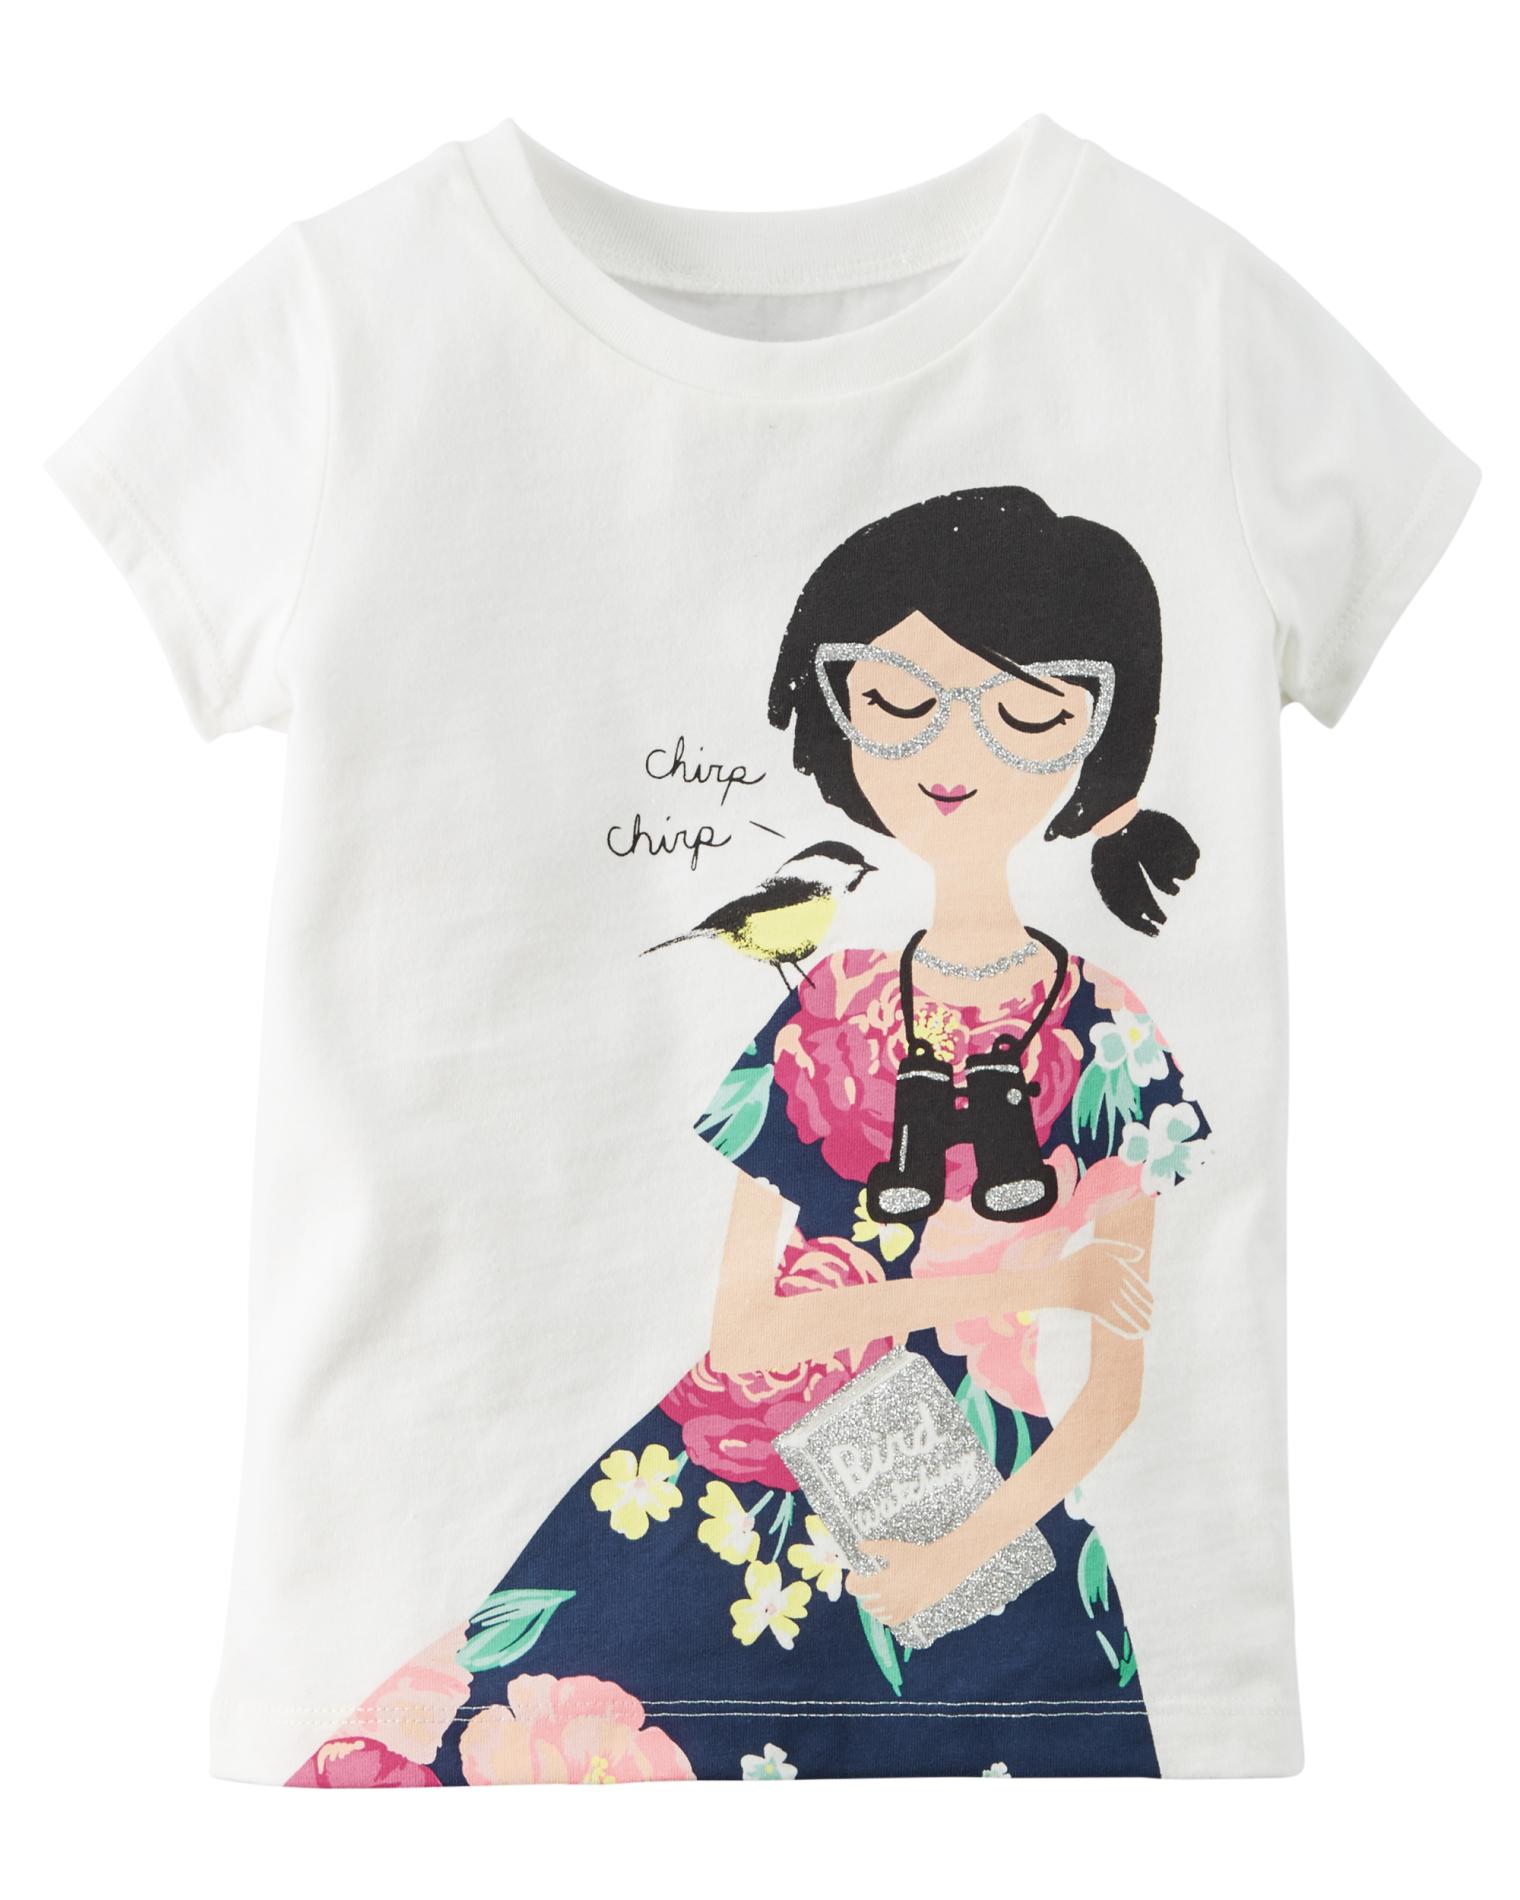 Carter's Girls' Short-Sleeve Graphic T-Shirt - Bird Watching